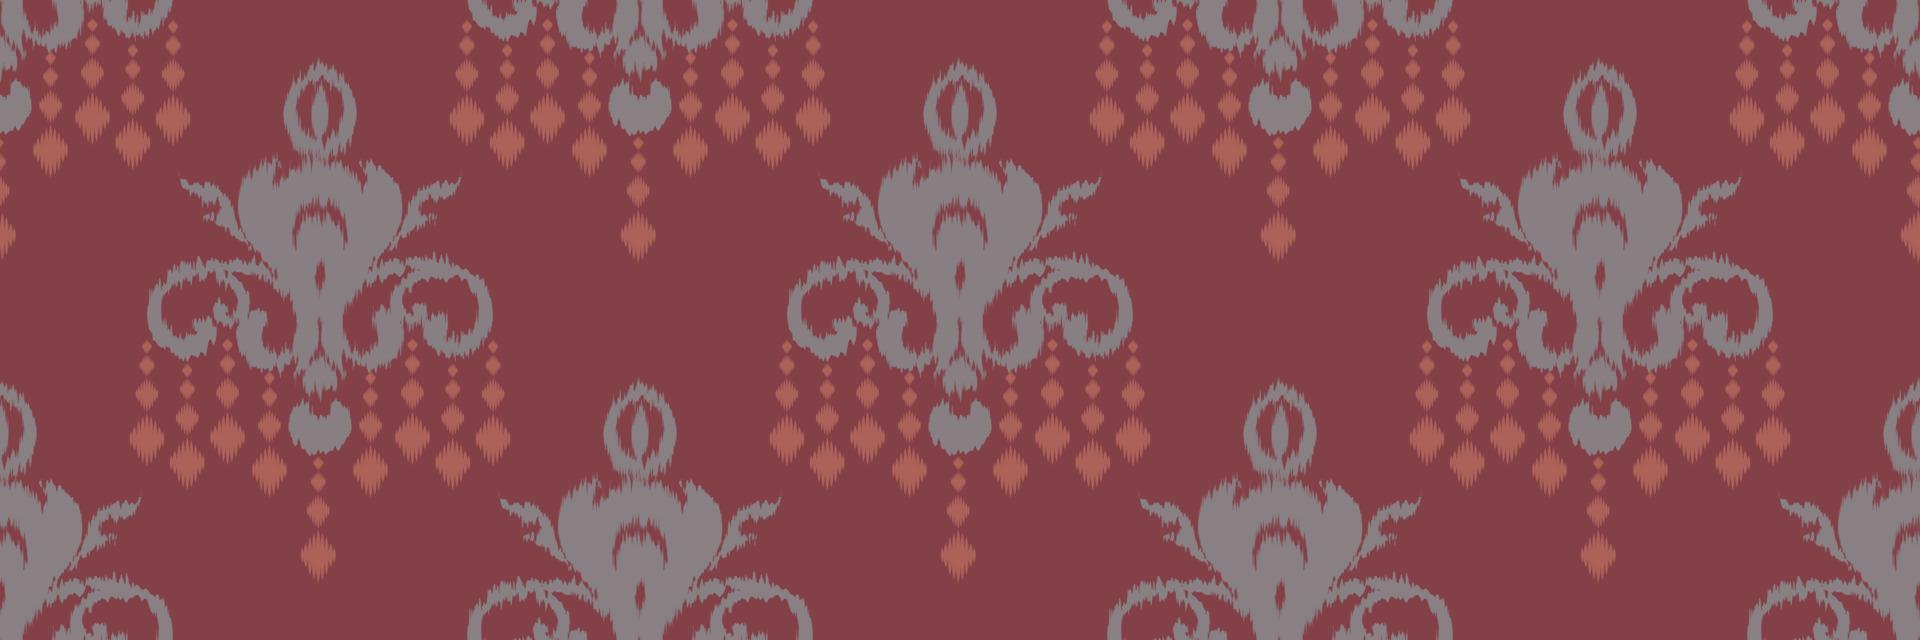 bordado escandinavo de damasco ikat, chevron tribal sin costuras ikat, natividad étnica textil digital diseño asiático arte antiguo para estampados tela sari mughal franjas textura kurti kurtis kurtas vector